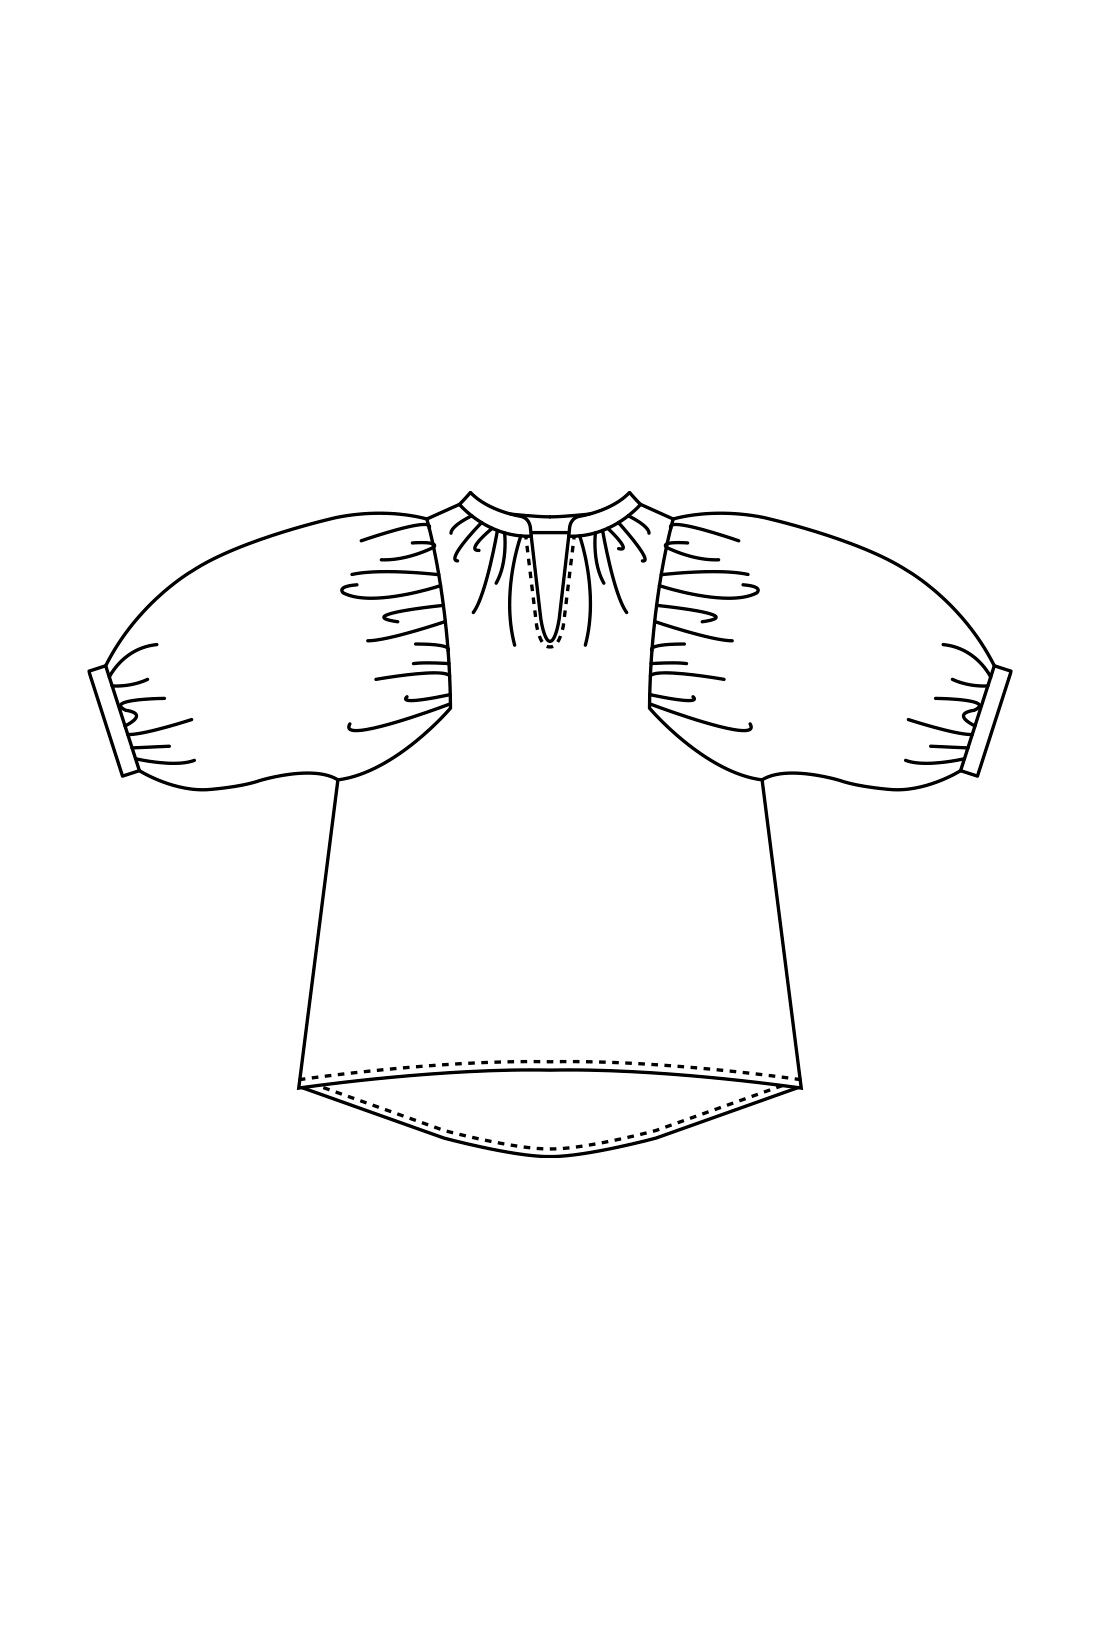 イディット|IEDIT[イディット]　コーデの鮮度をアップする 大人華やかなペイズリープリントロングブラウス〈イエロー〉|腰まわりが隠れるチュニック丈とボリューミーな袖が女性らしいゆったりデザイン。七分袖はカフス後ろがプッシュアップしやすいゴムシャーリング仕様。